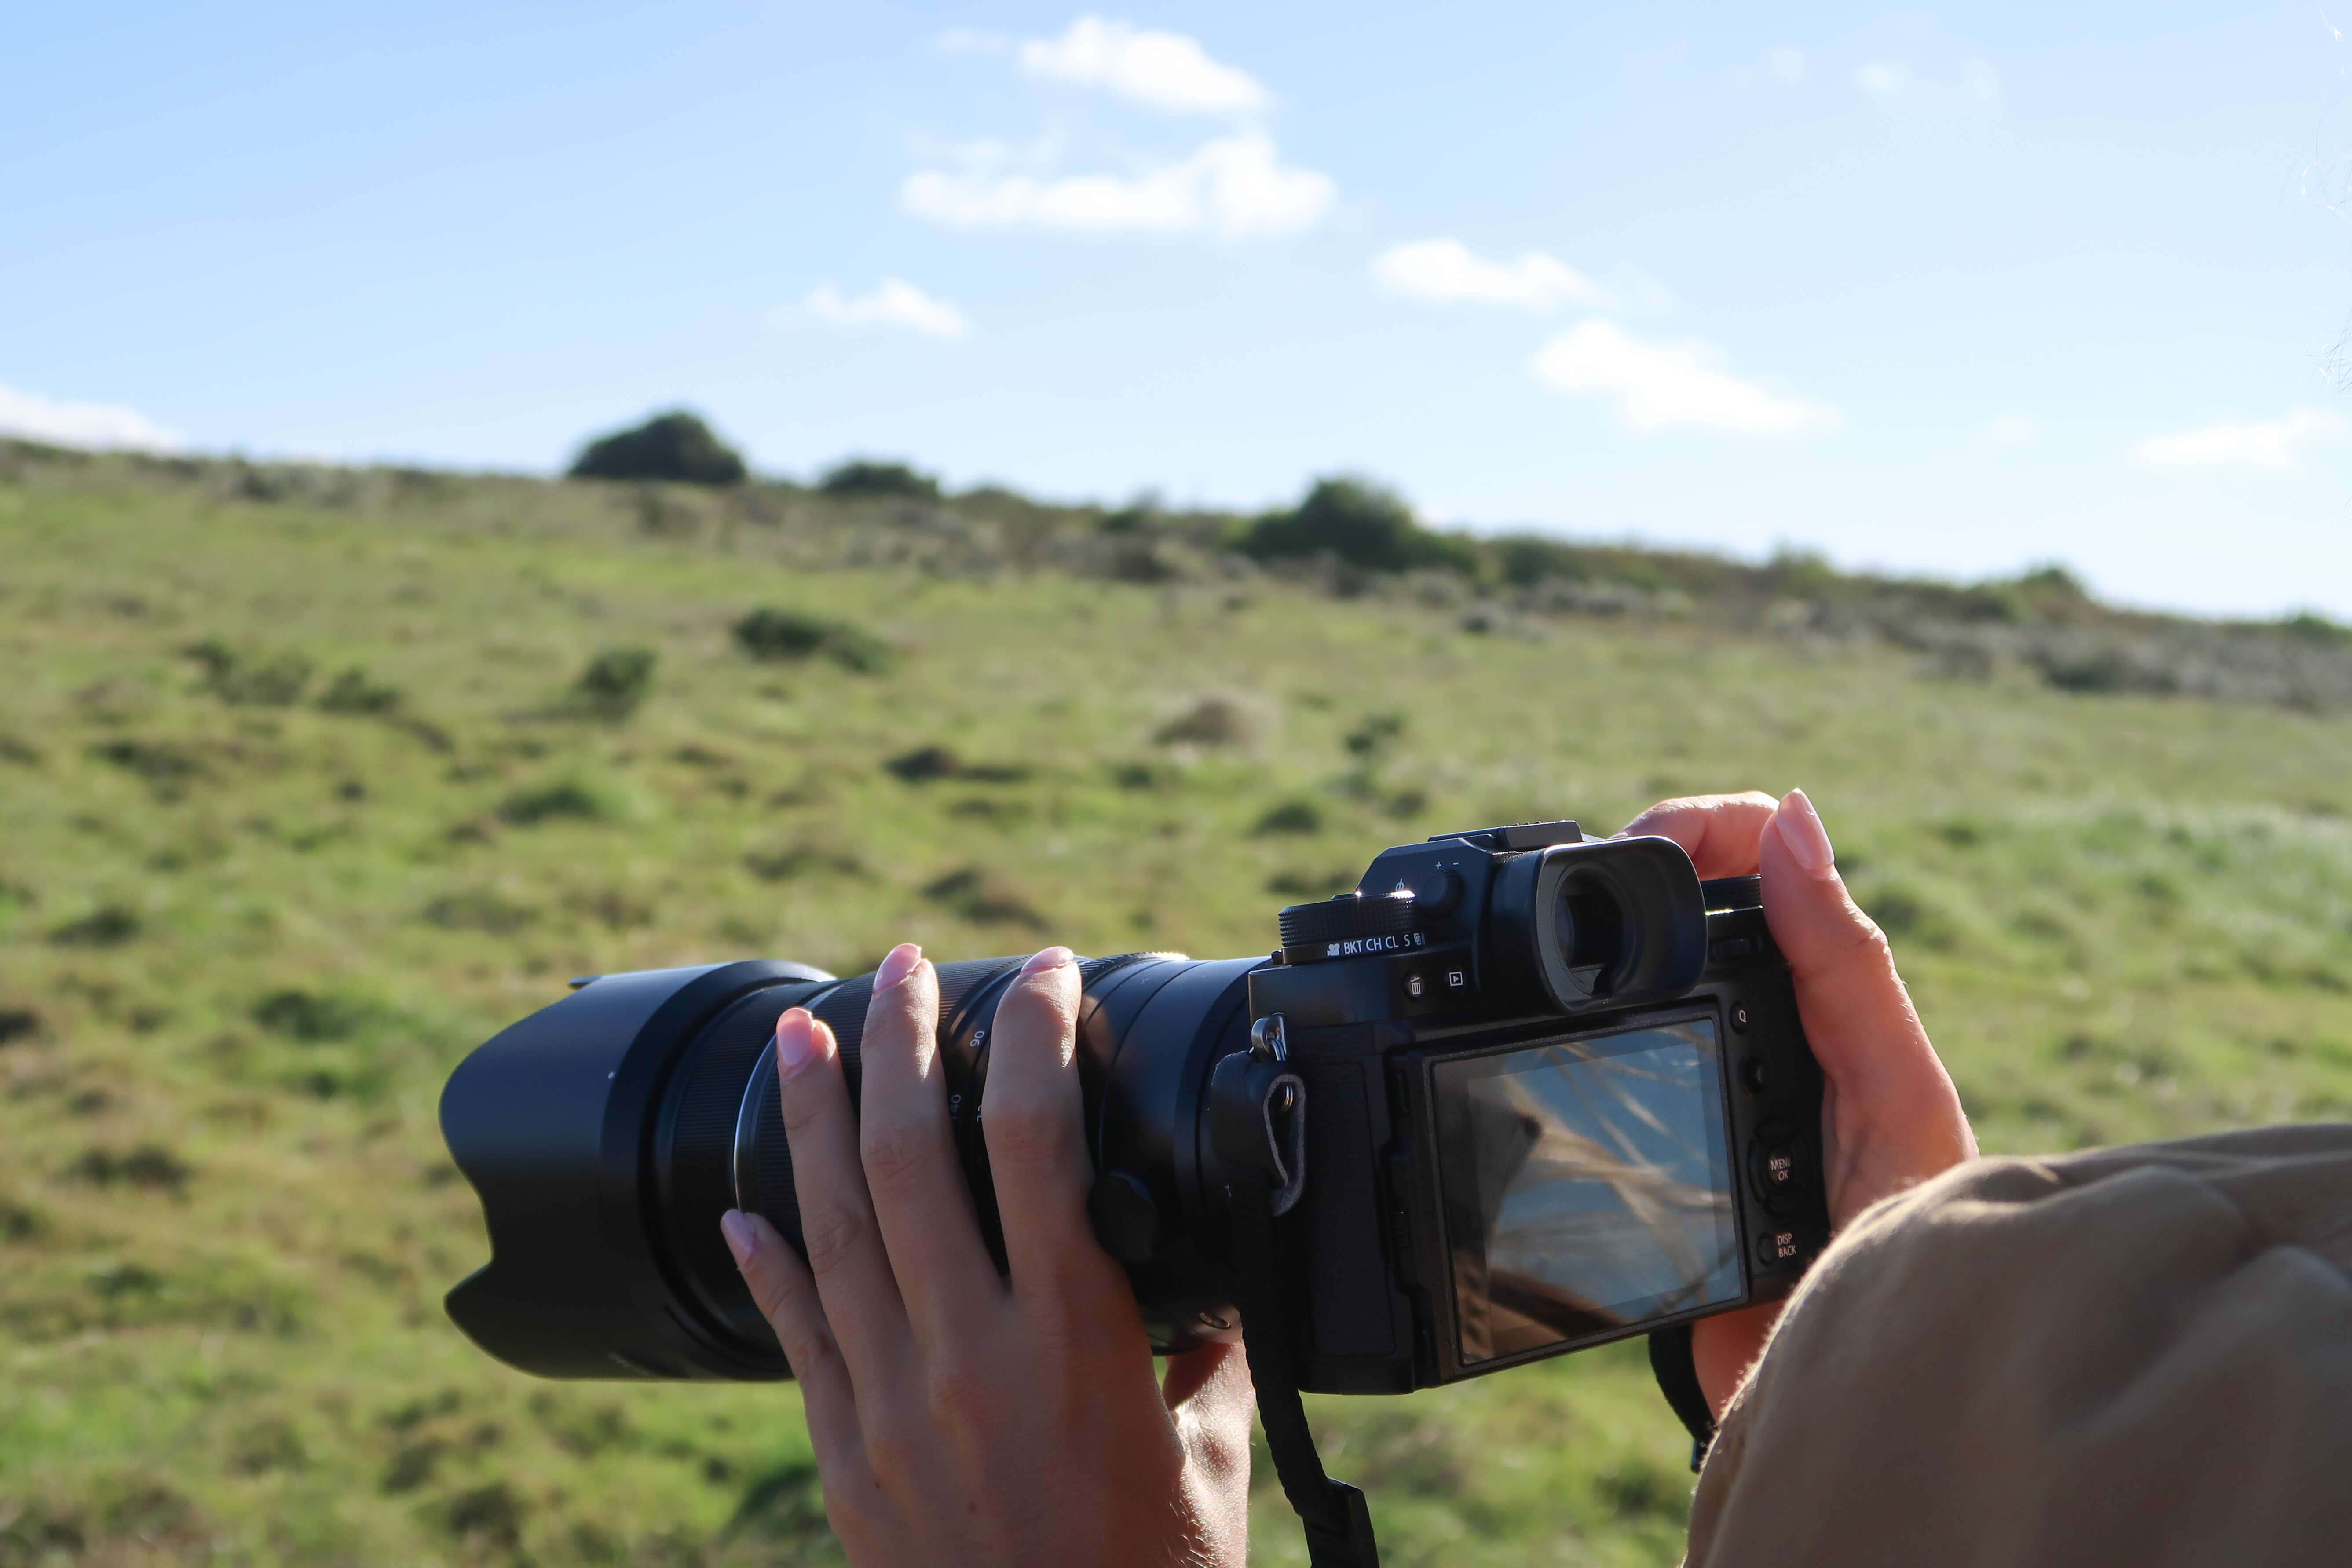 Shooting on safari with Fujifilm X-T2